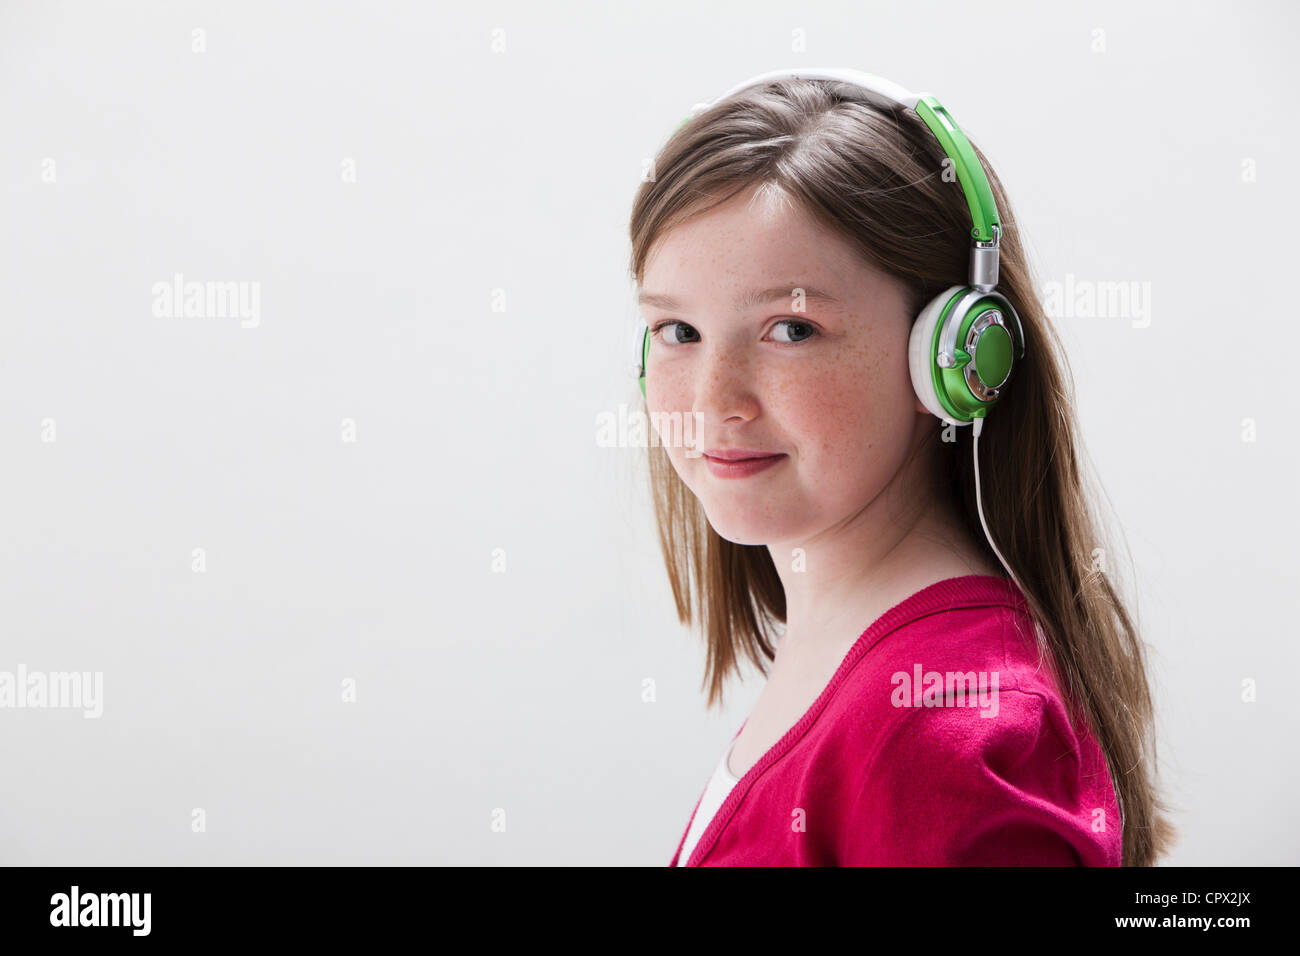 Girl in red wearing headphones, studio shot Stock Photo